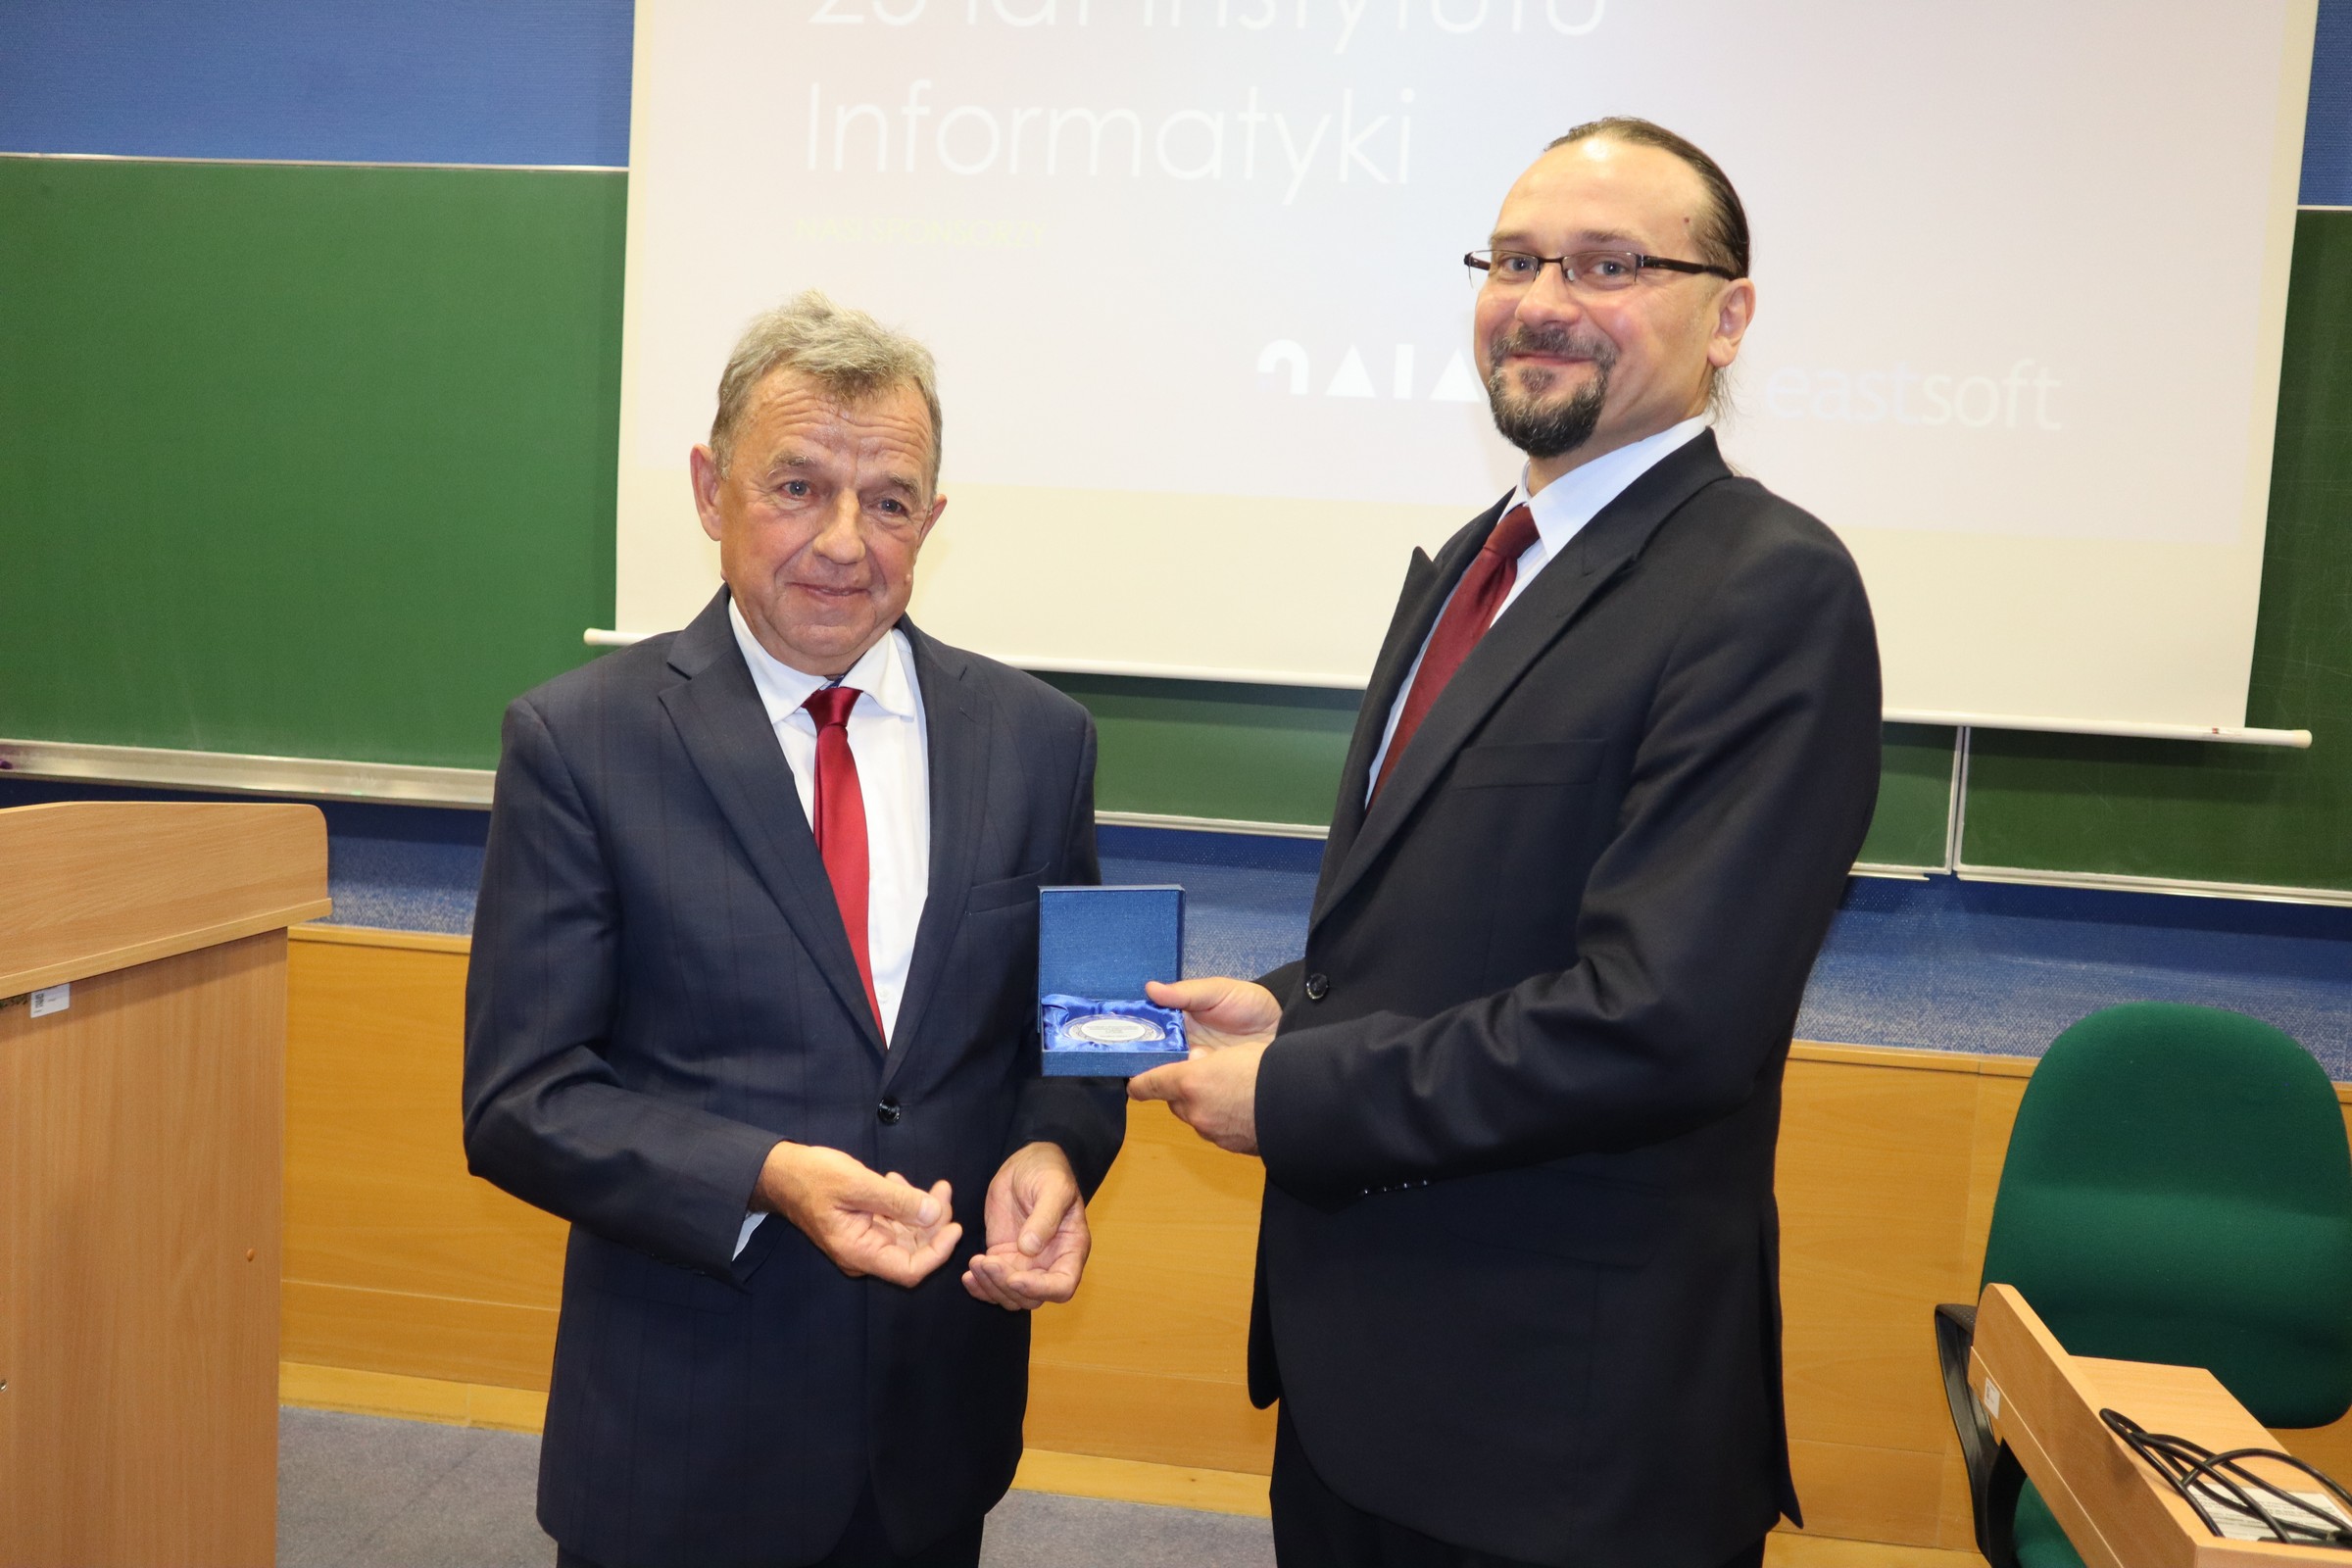 Dziekan WNSP Cezary Sempruch wręcza pamiątkowy medal dyrektorowi Arturowi Niewiadomskiemu